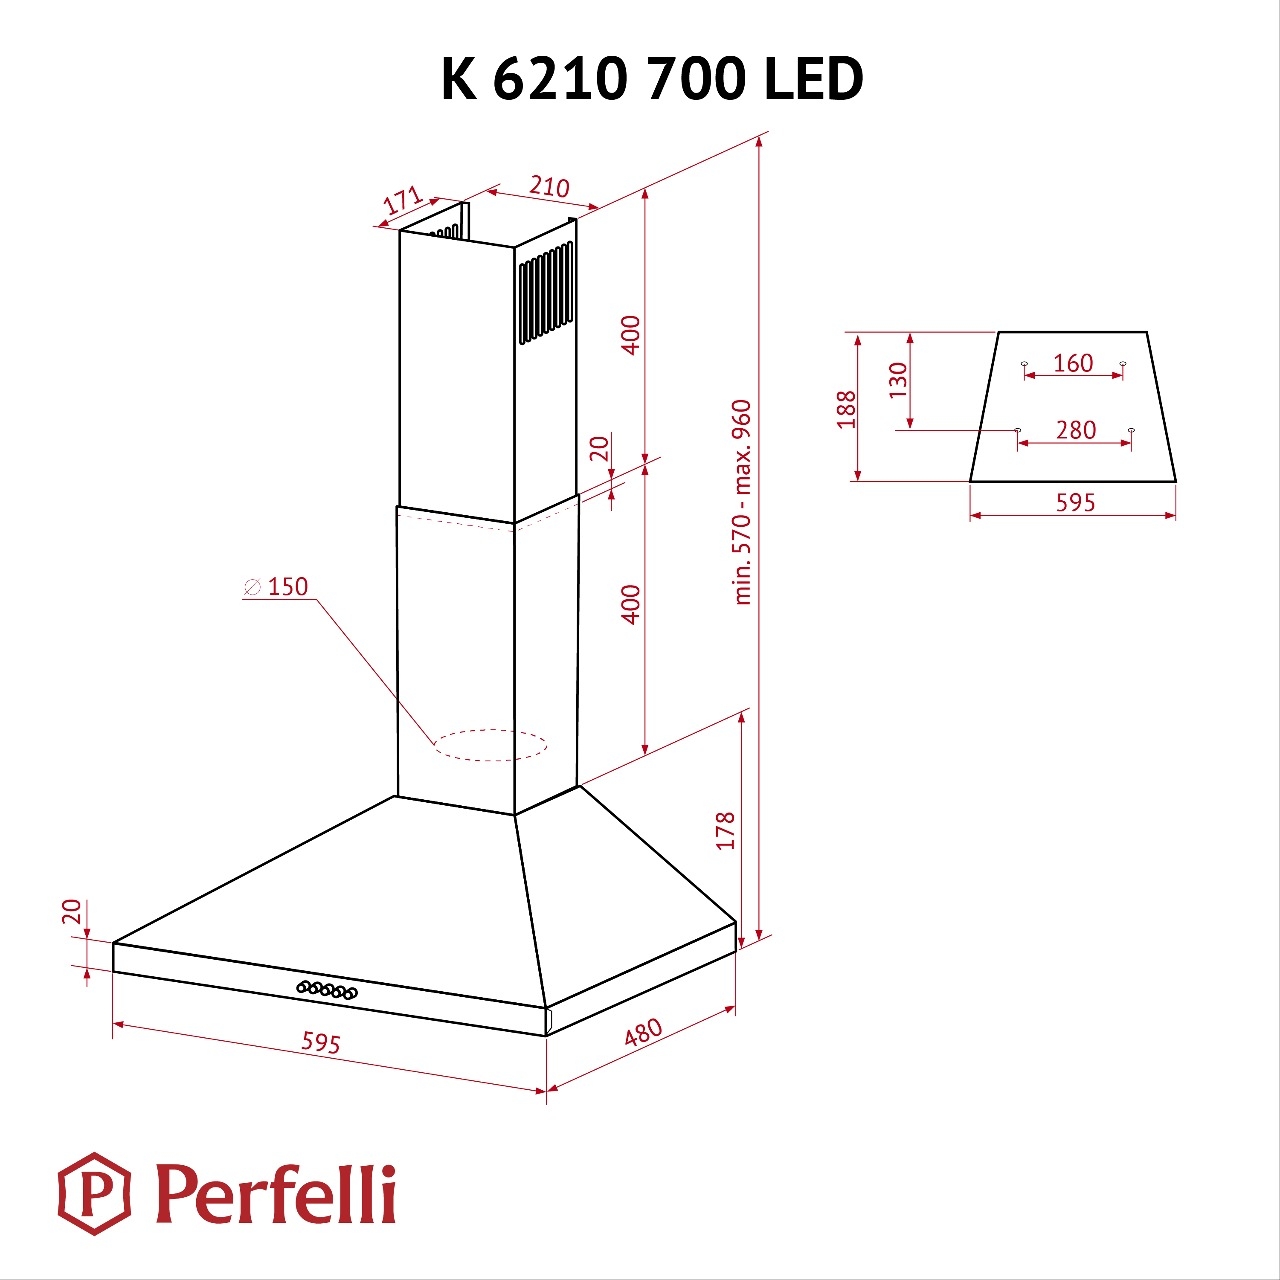 Perfelli K 6210 WH 700 LED Габаритные размеры